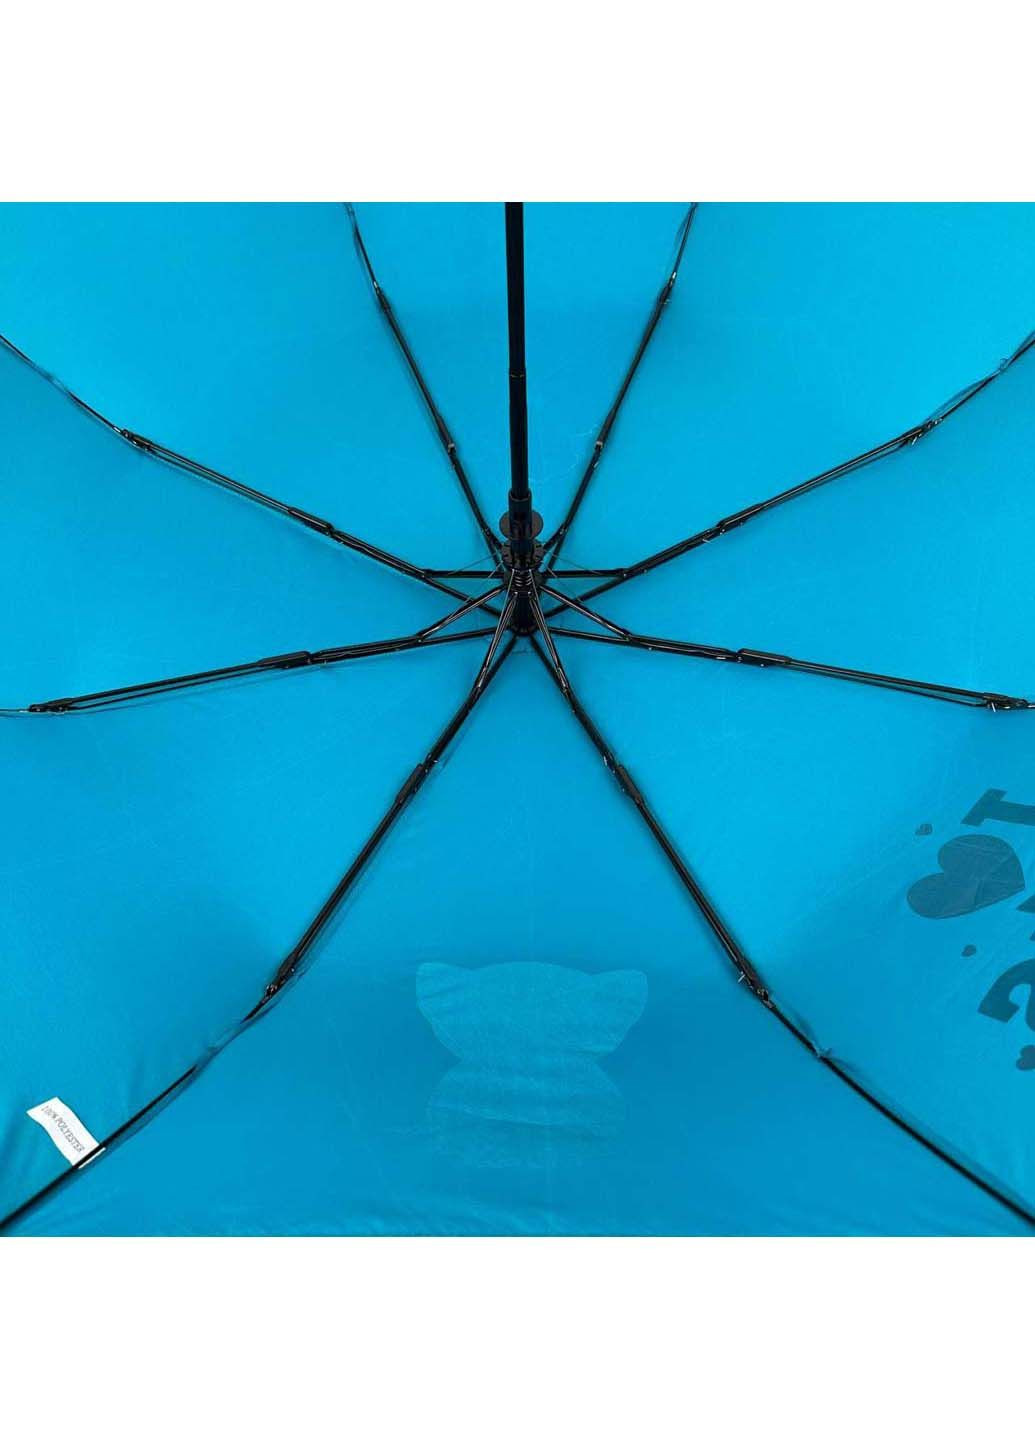 Детский складной зонт на 8 спиц "ICats" Toprain (289977529)